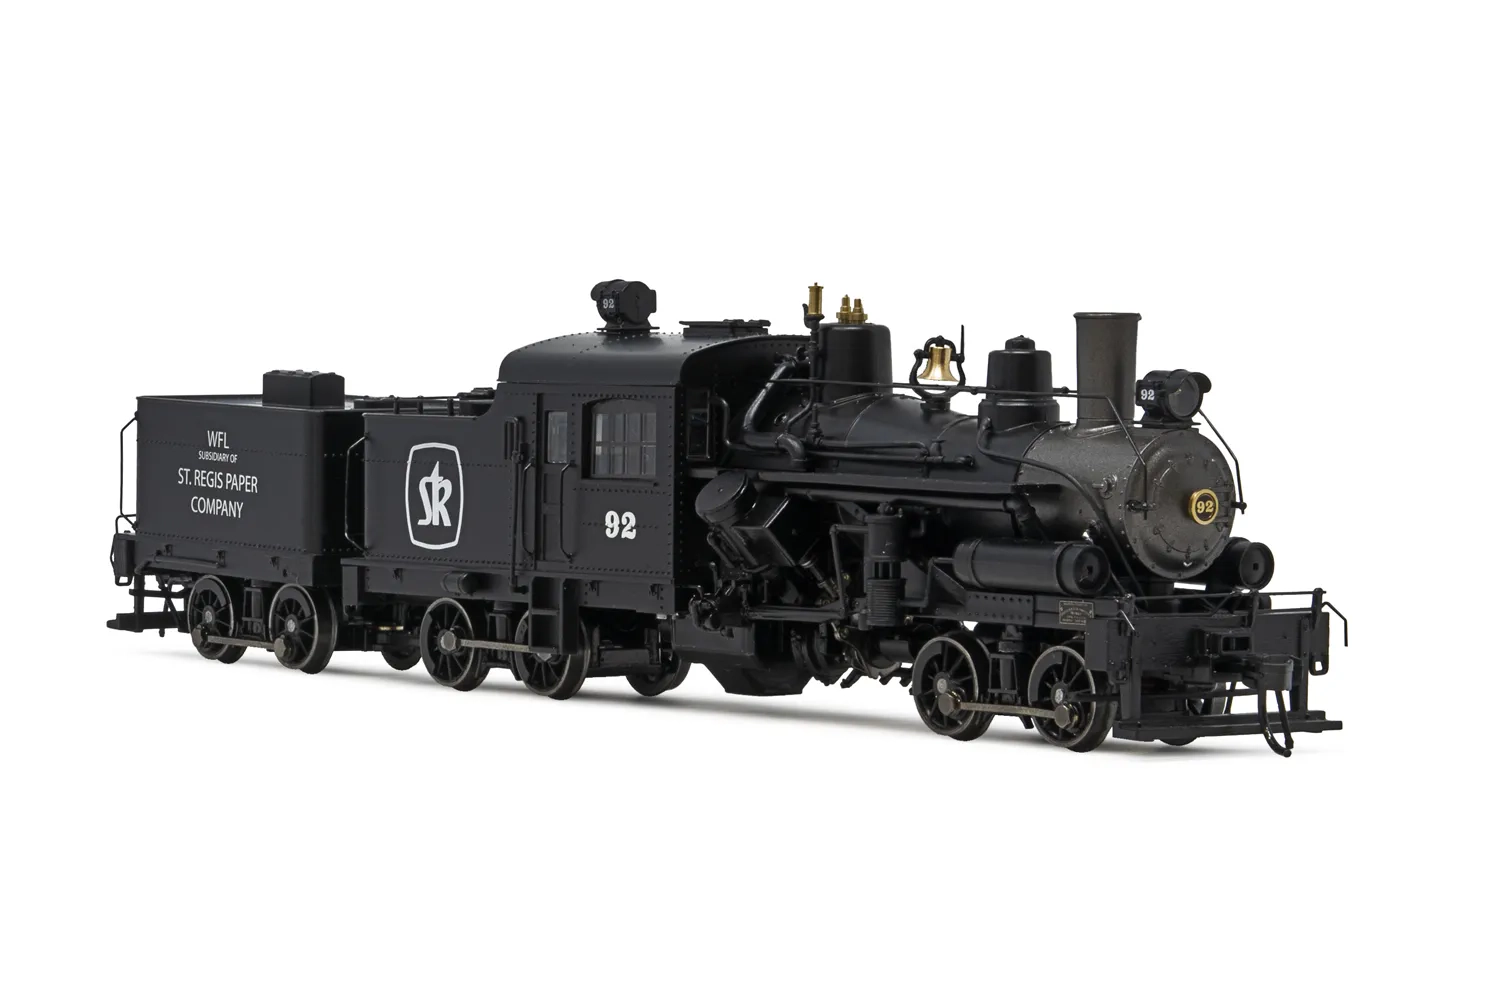 Heisler steam locomotive, 3-truck model, "St. Regis Paper #92", ep. III